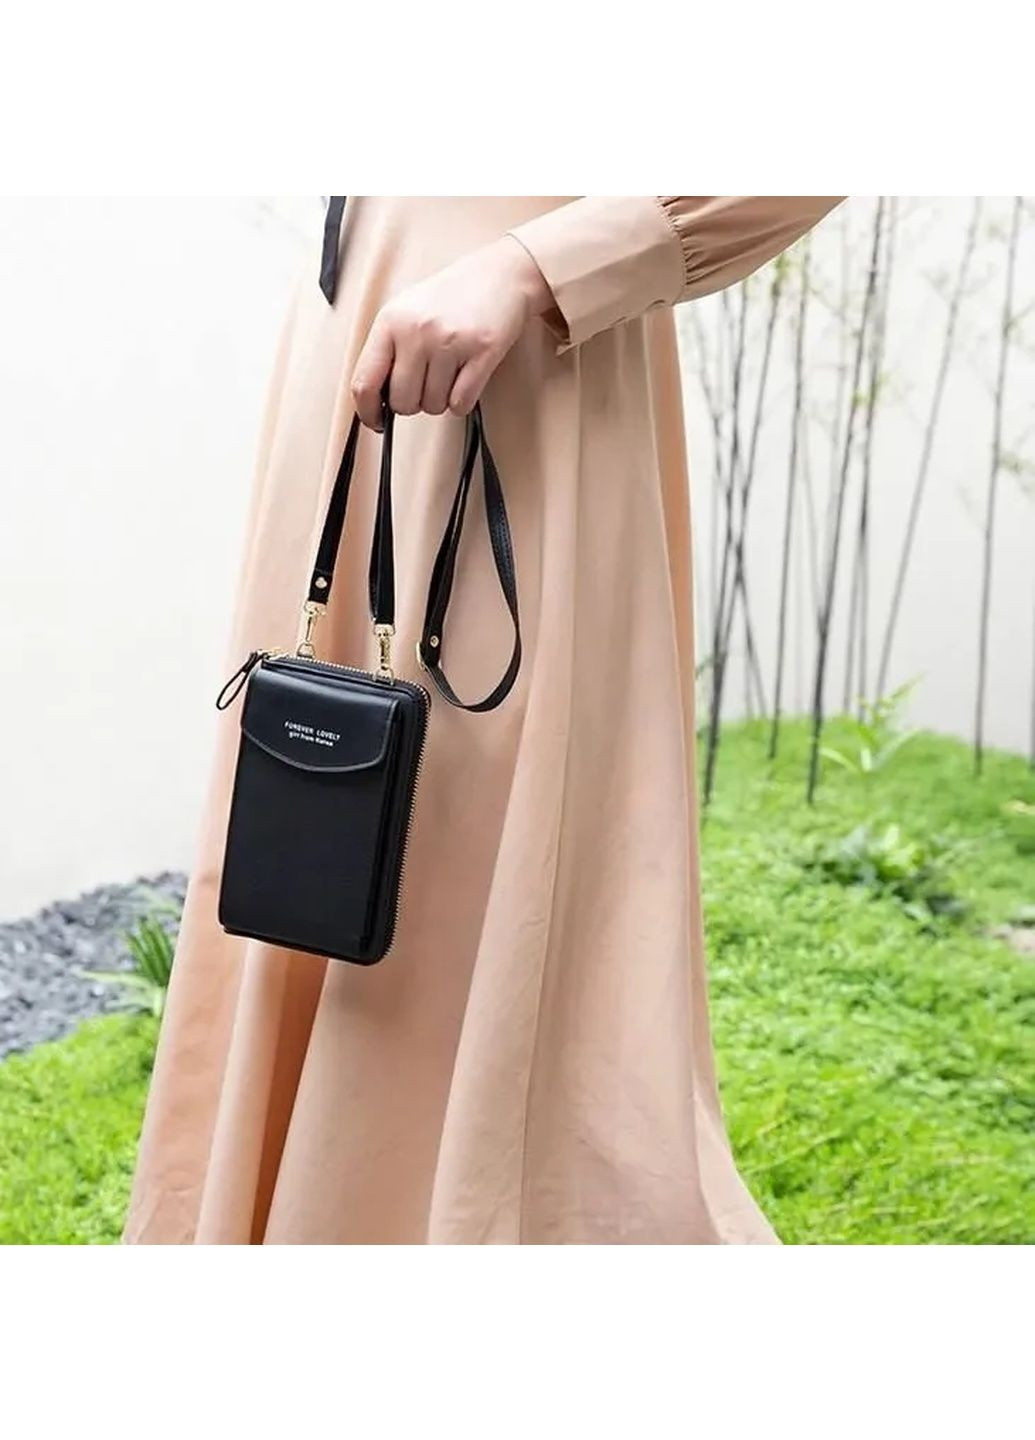 Женская сумка кошелек клатч женский черный, сумка для телефона через плечо FOREVER LOVELY, сумка чехол web No Brand (289870012)